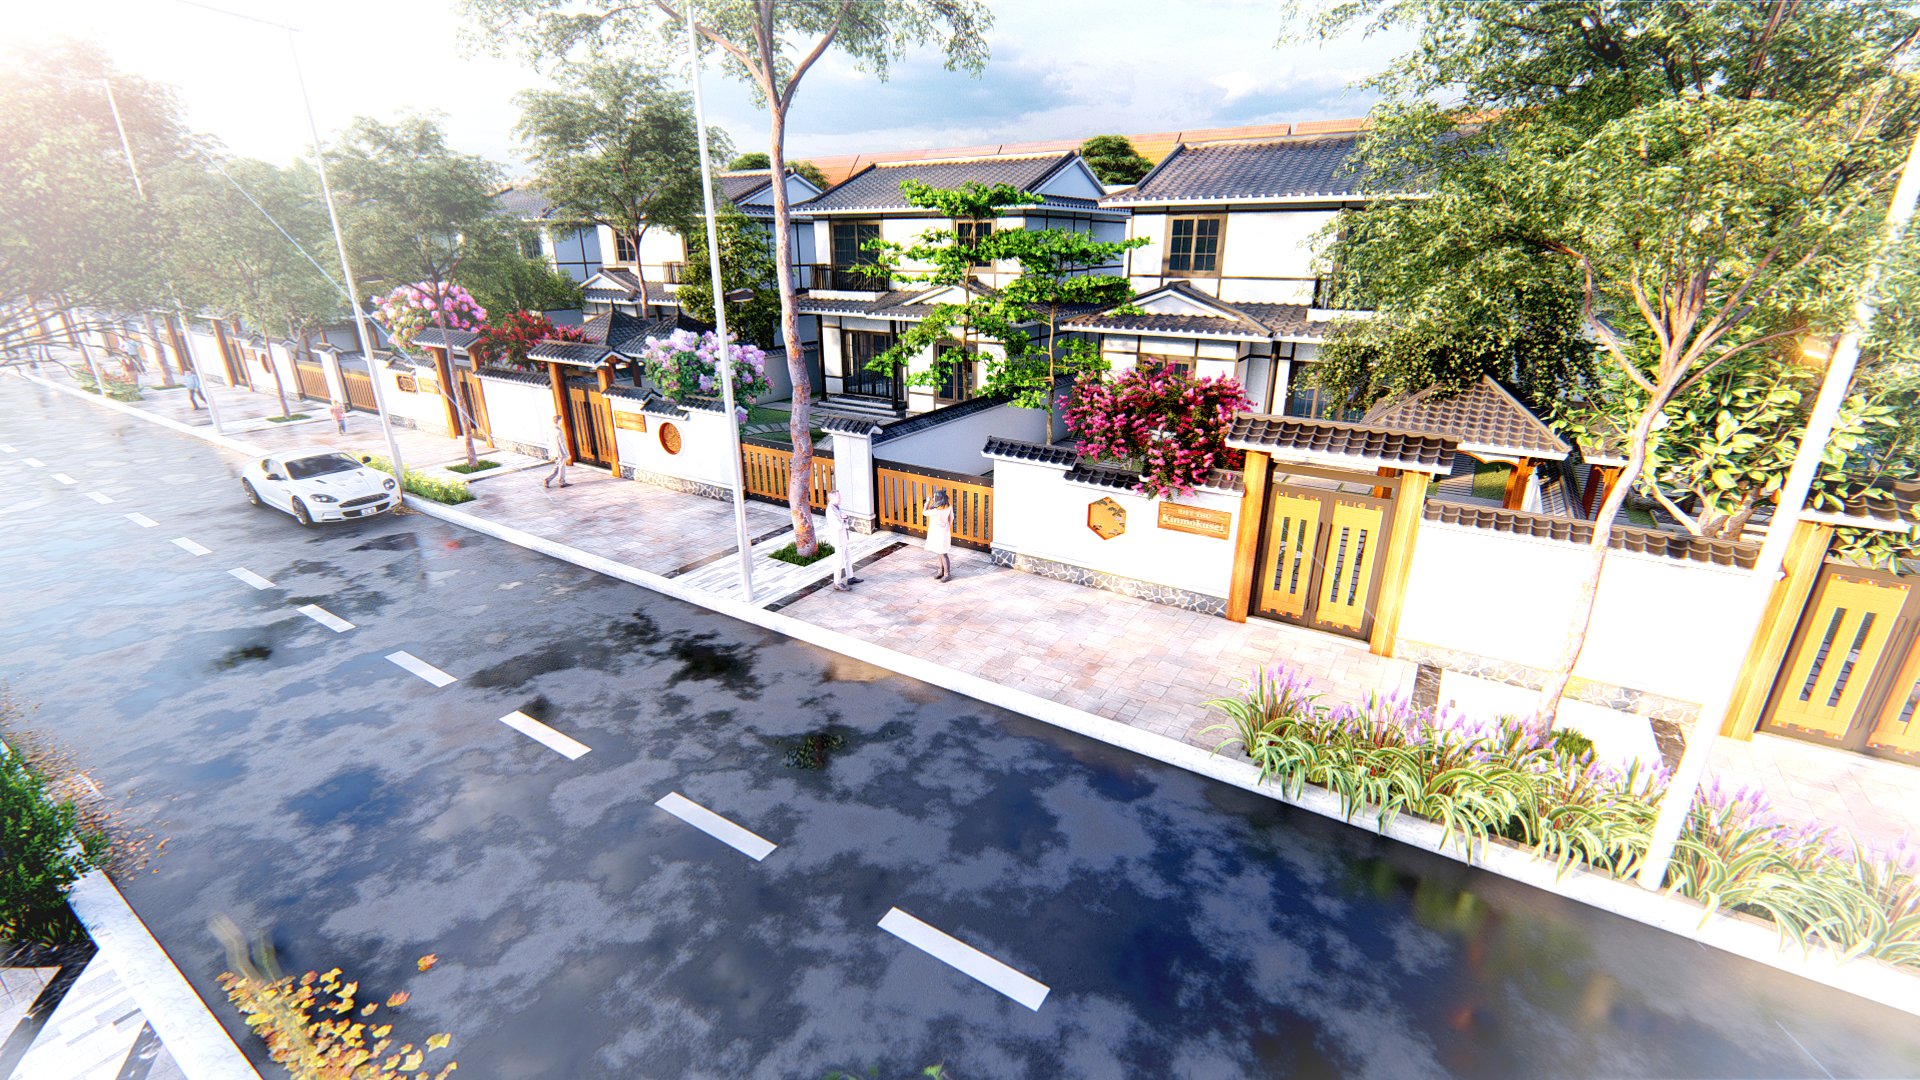 FVG Land sẽ cho ra mắt phân khu biệt thự Nhật Bản tại dự án Vịnh An Hòa City - Ảnh 2.